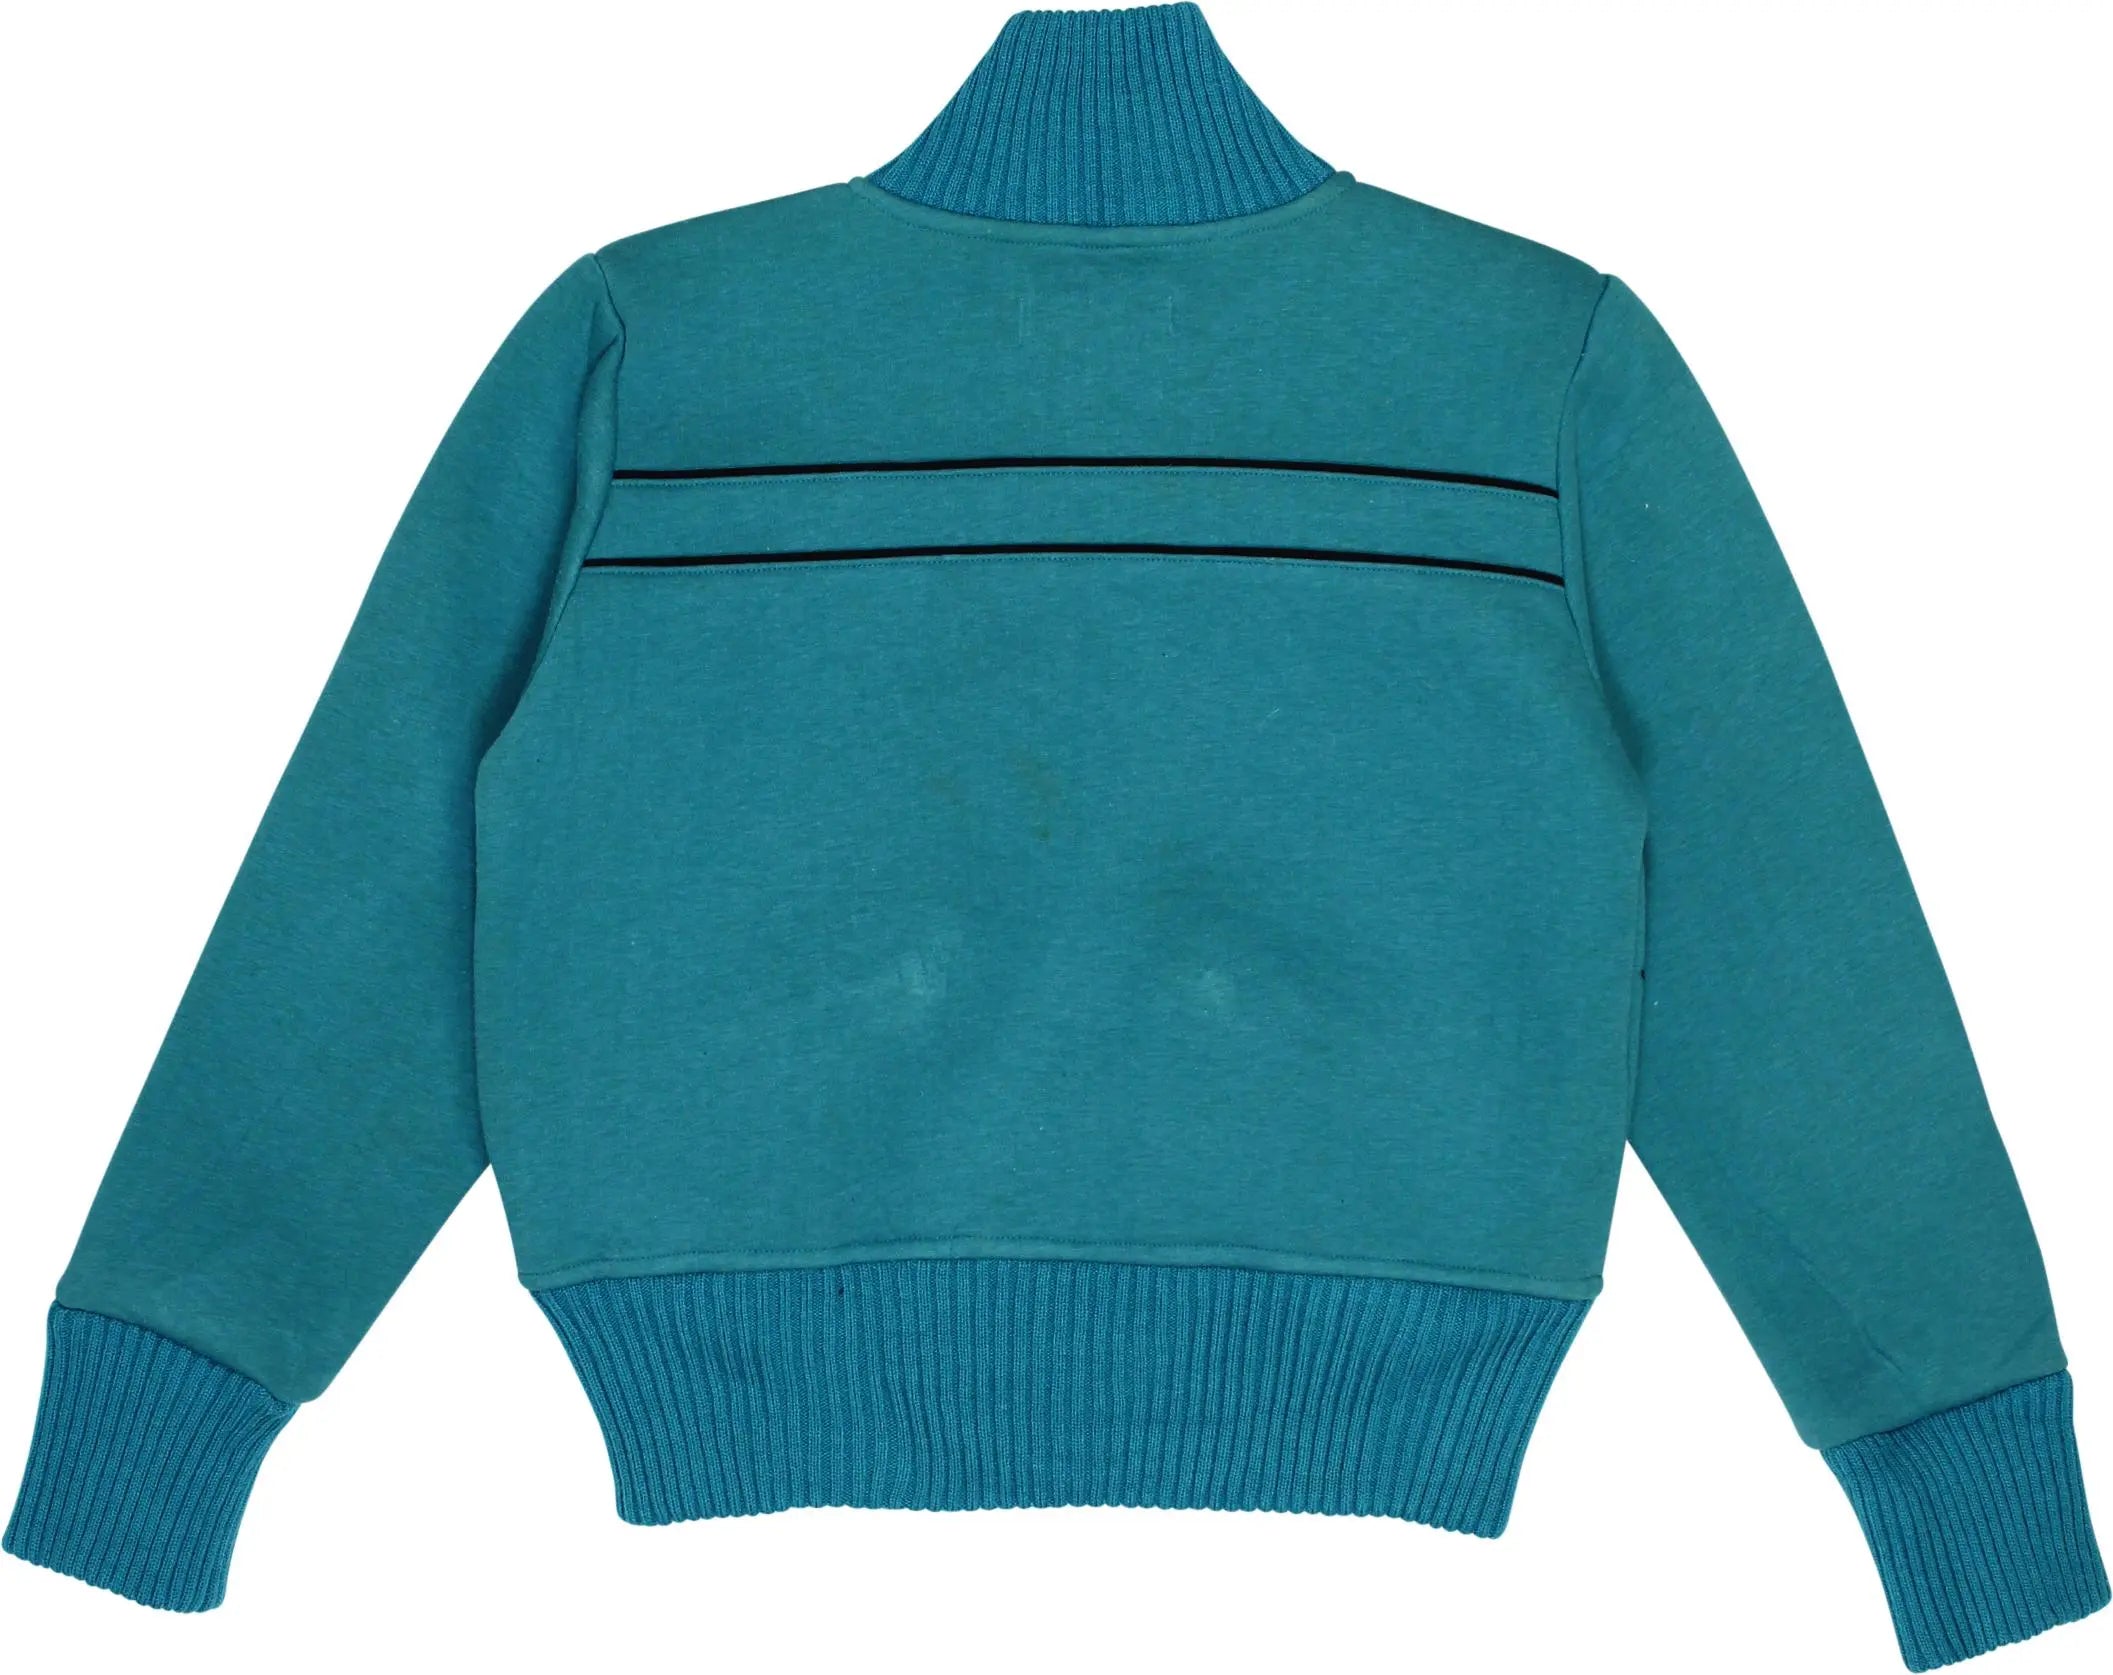 JSA - Blue Jacket- ThriftTale.com - Vintage and second handclothing